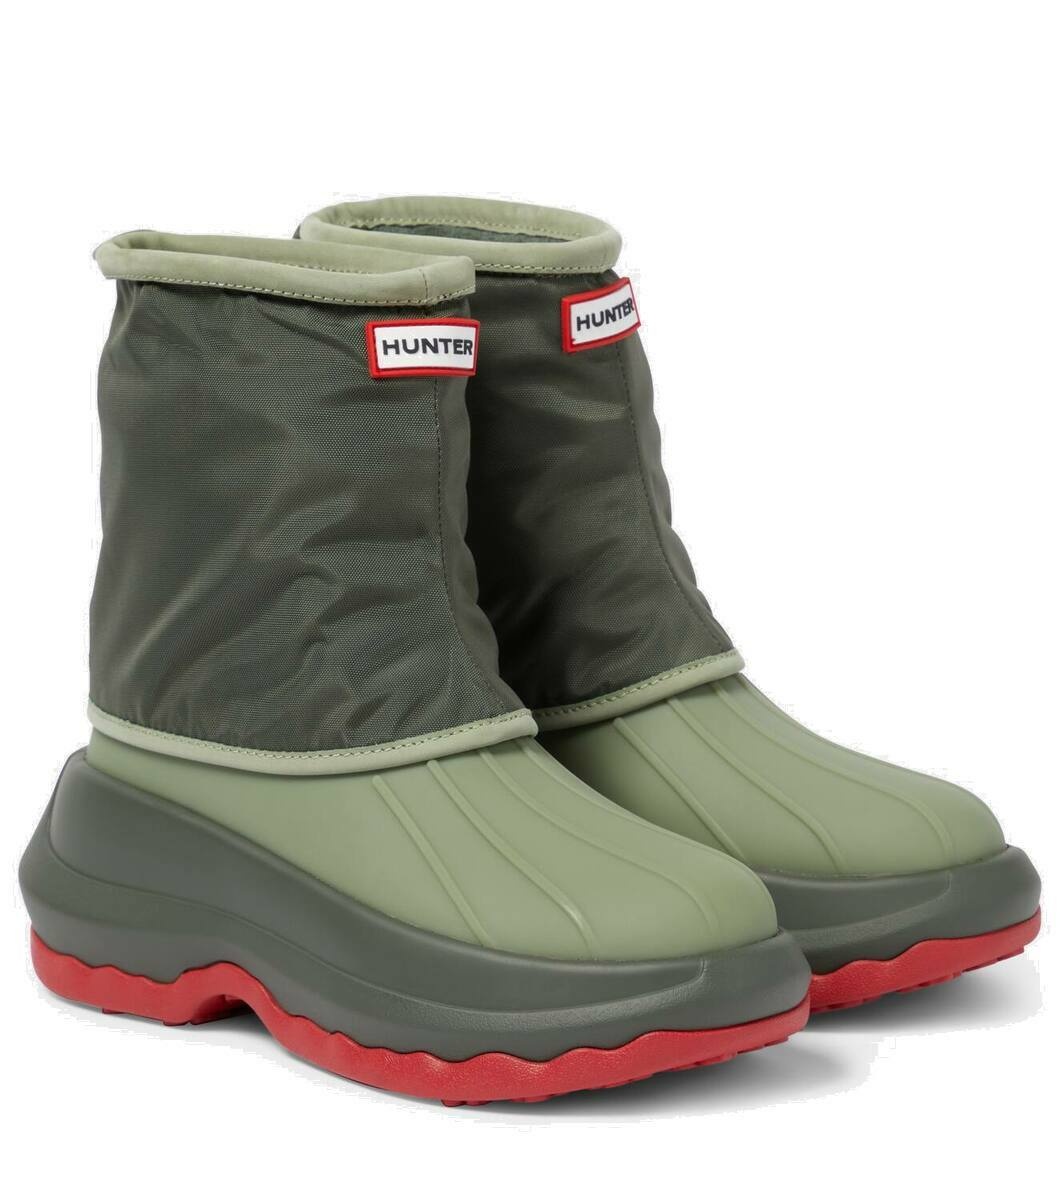 Photo: Kenzo x Hunter rain boots